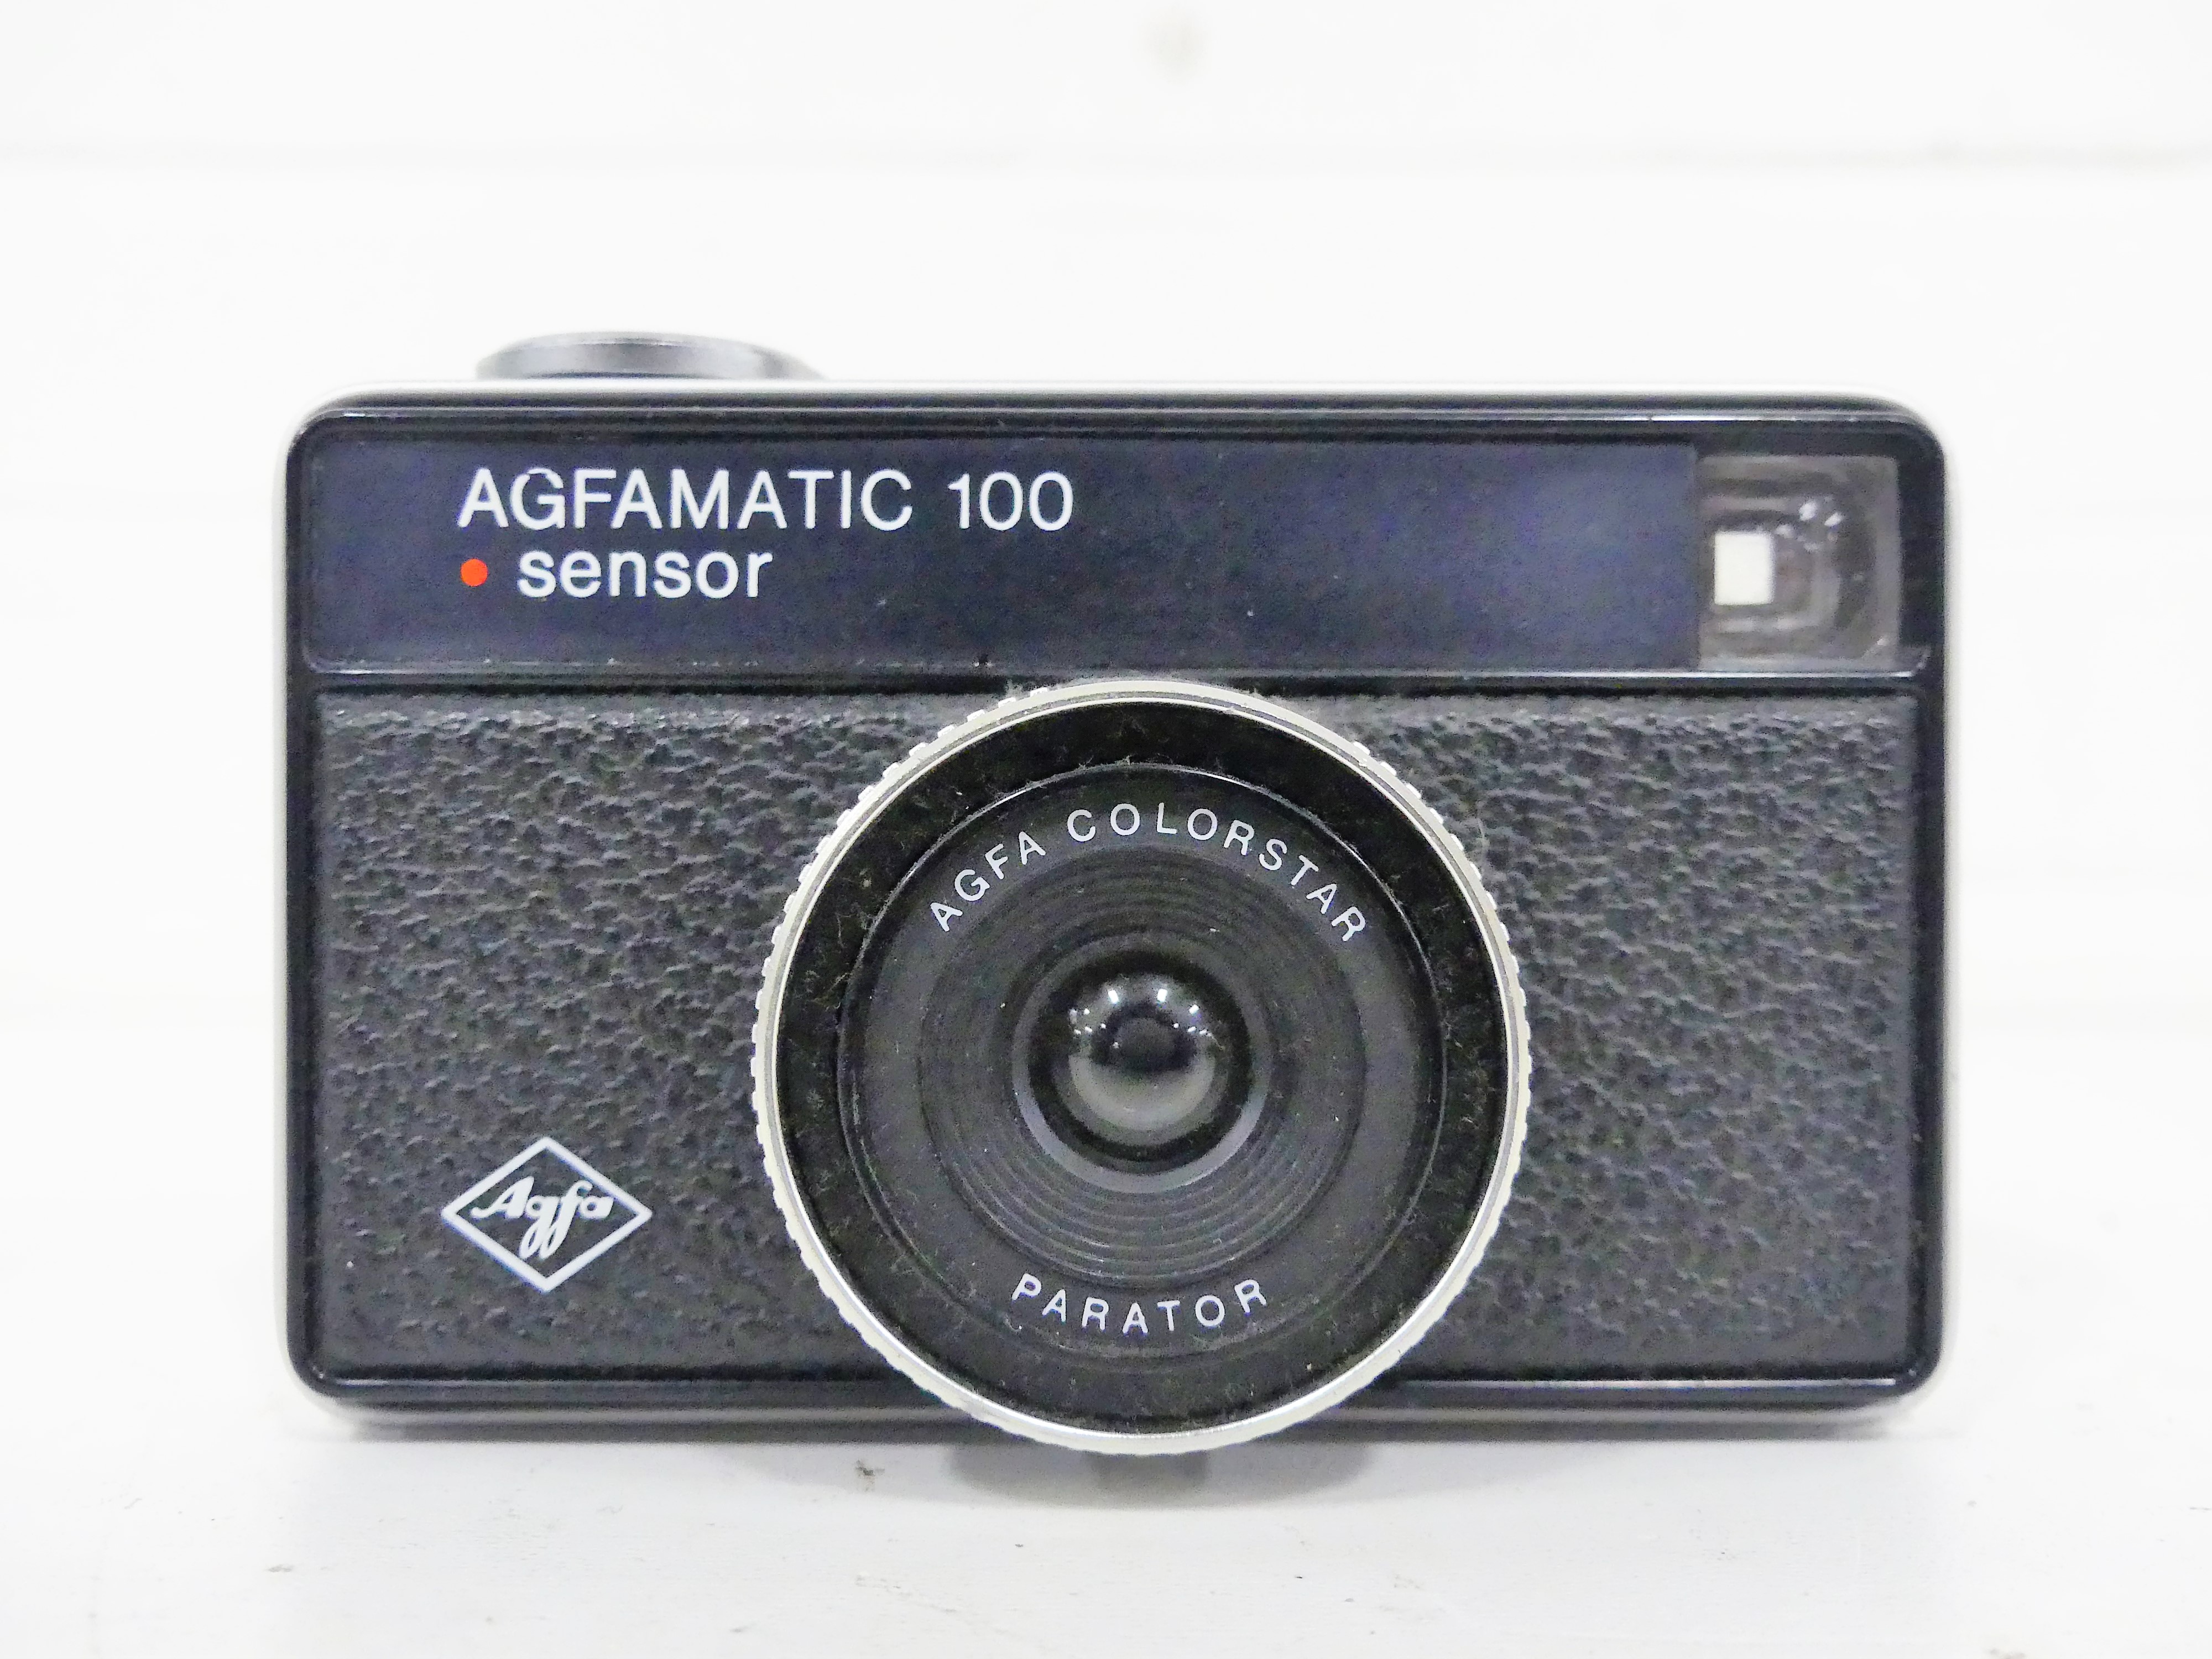 Agfa camera Agfamatic 100 sensor, 1973